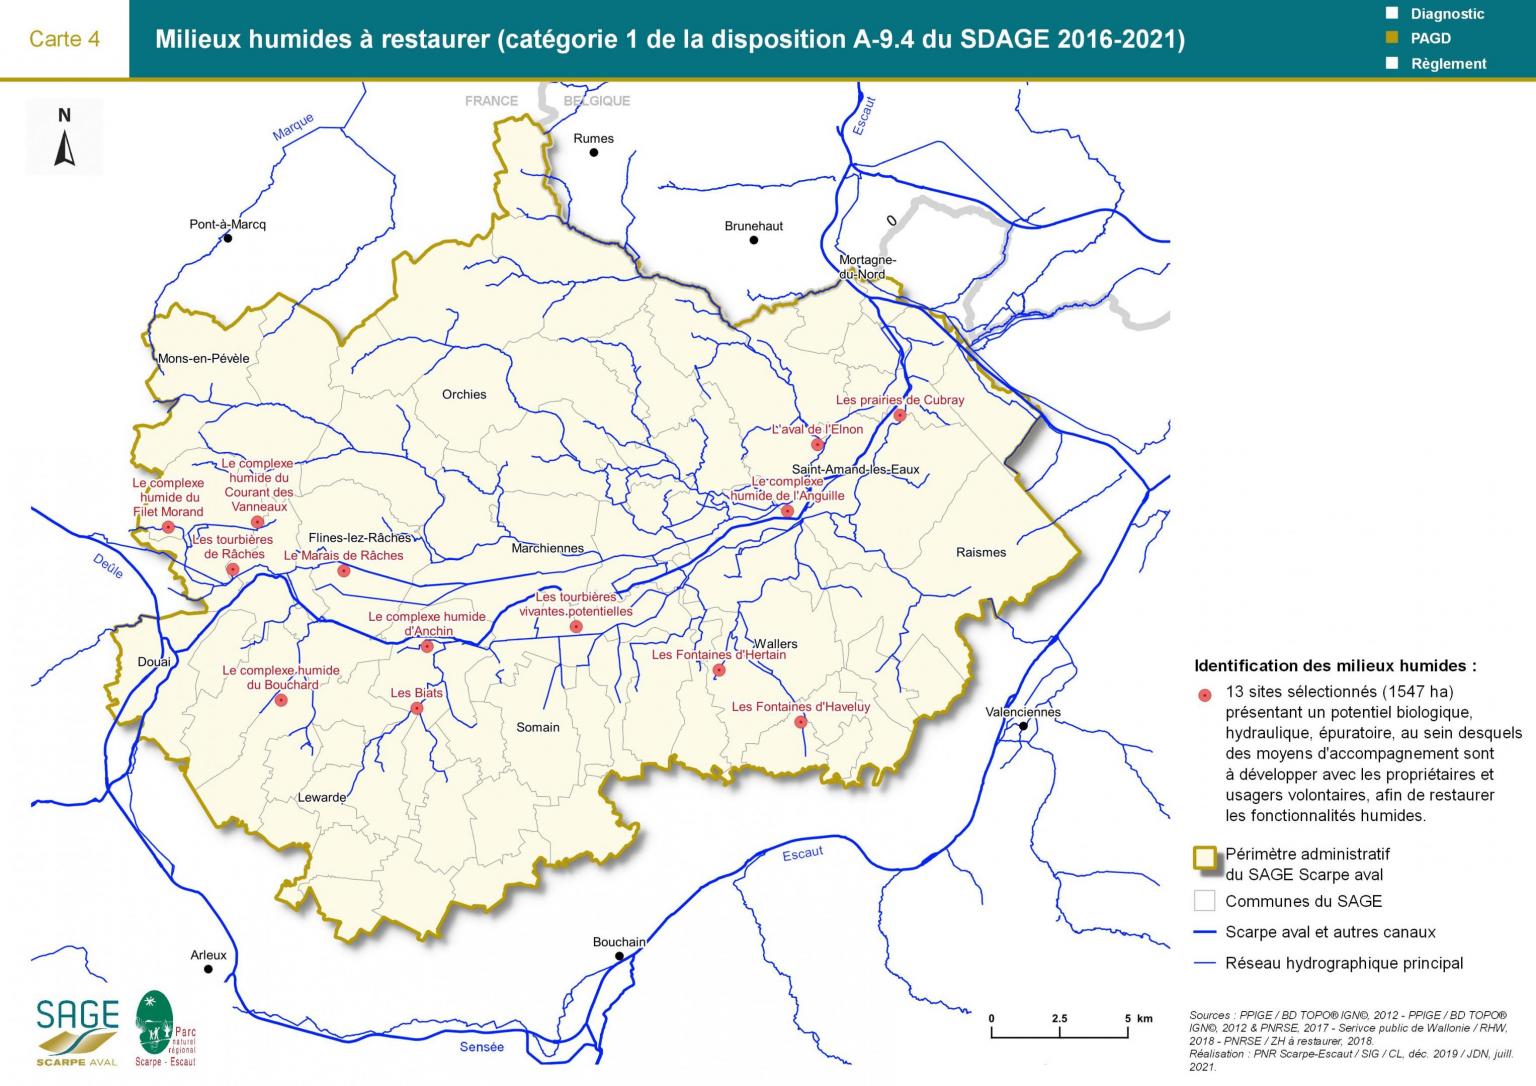 Mesures - Carte 4 : Milieux humides à restaurer (catégorie 1 de la disposition A-9.4 du SDAGE)